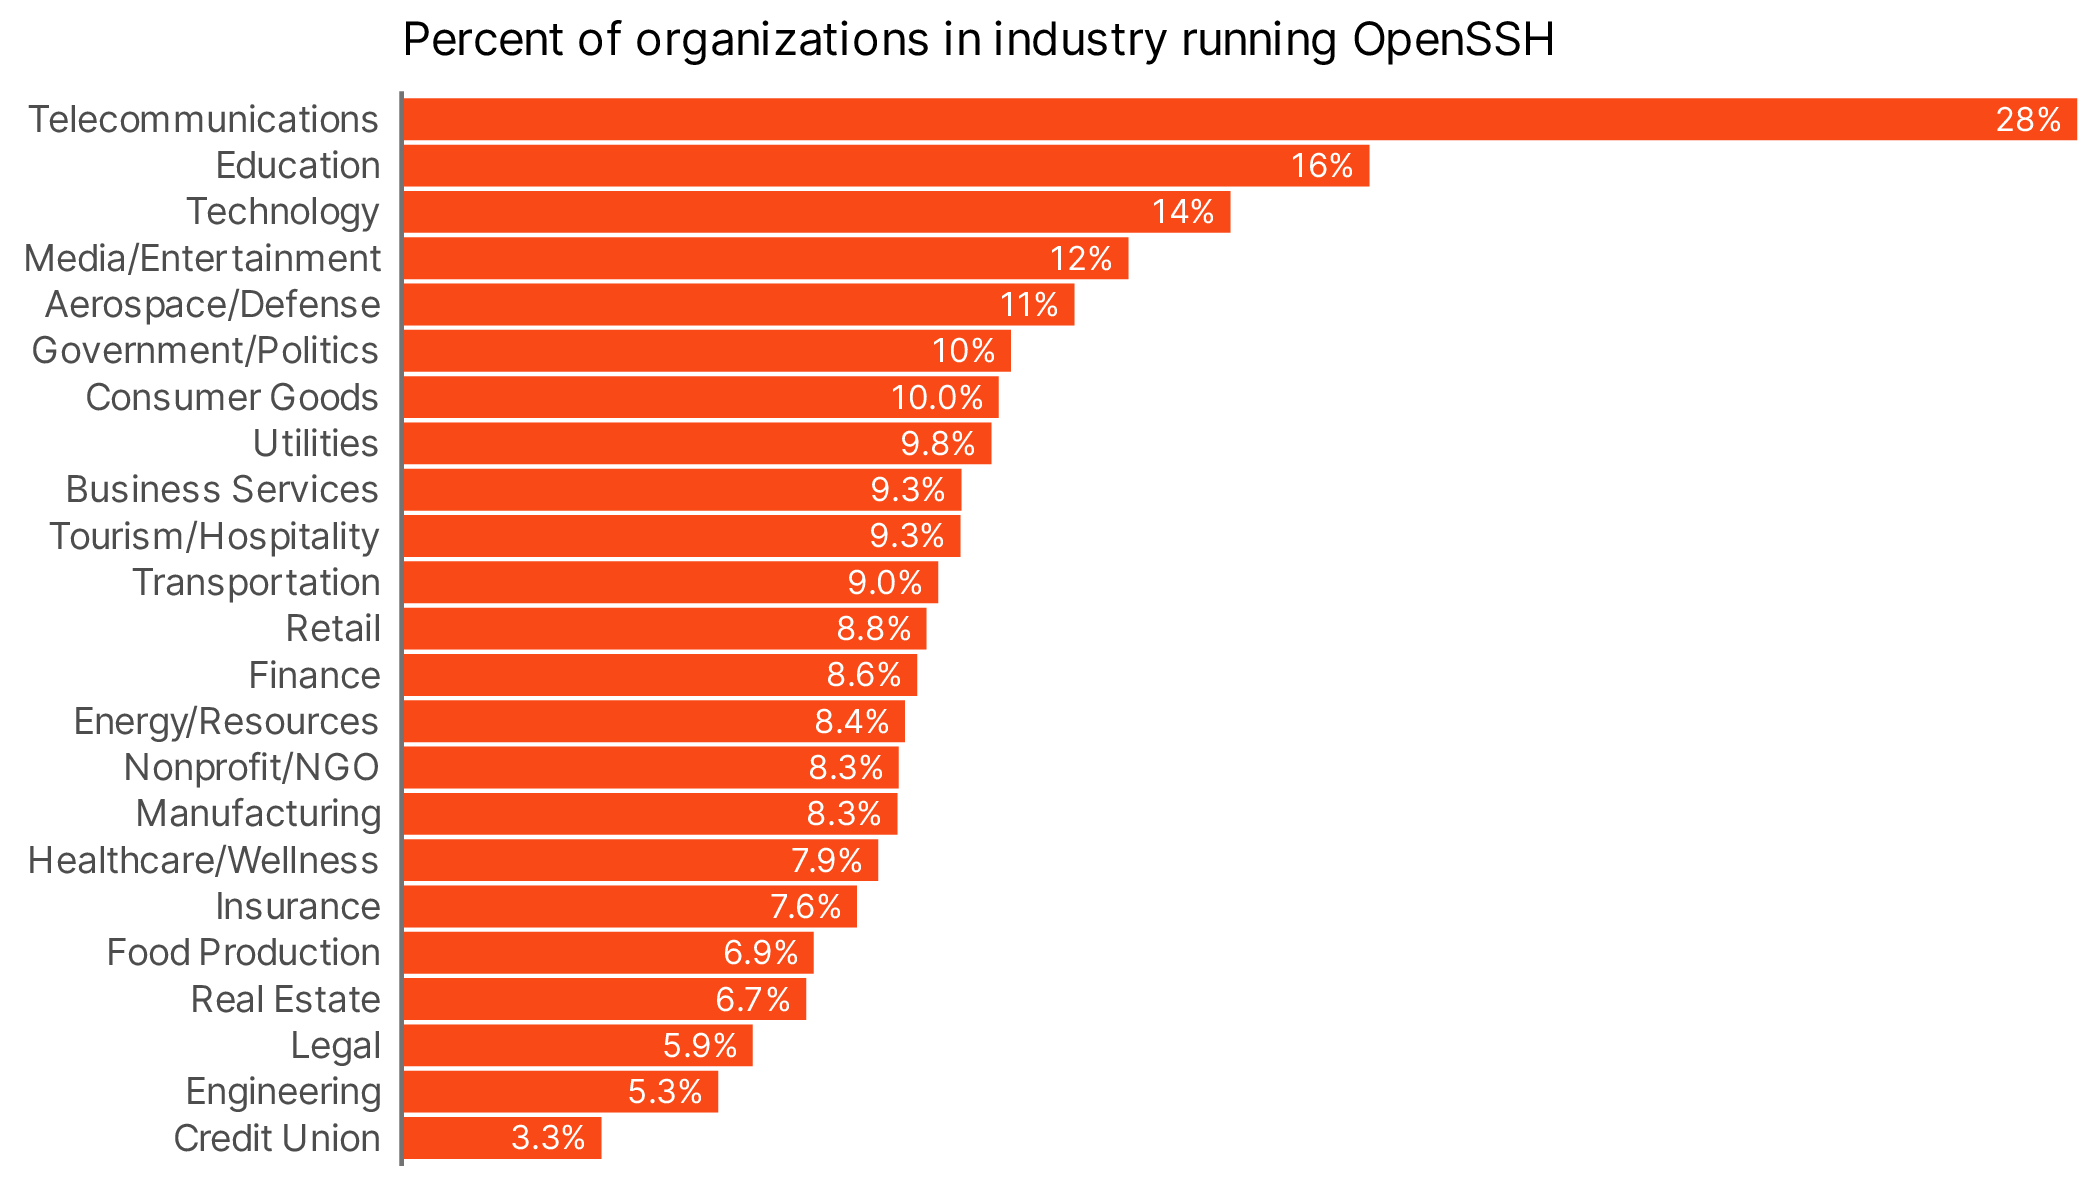 Top industries running open SSH bar chart